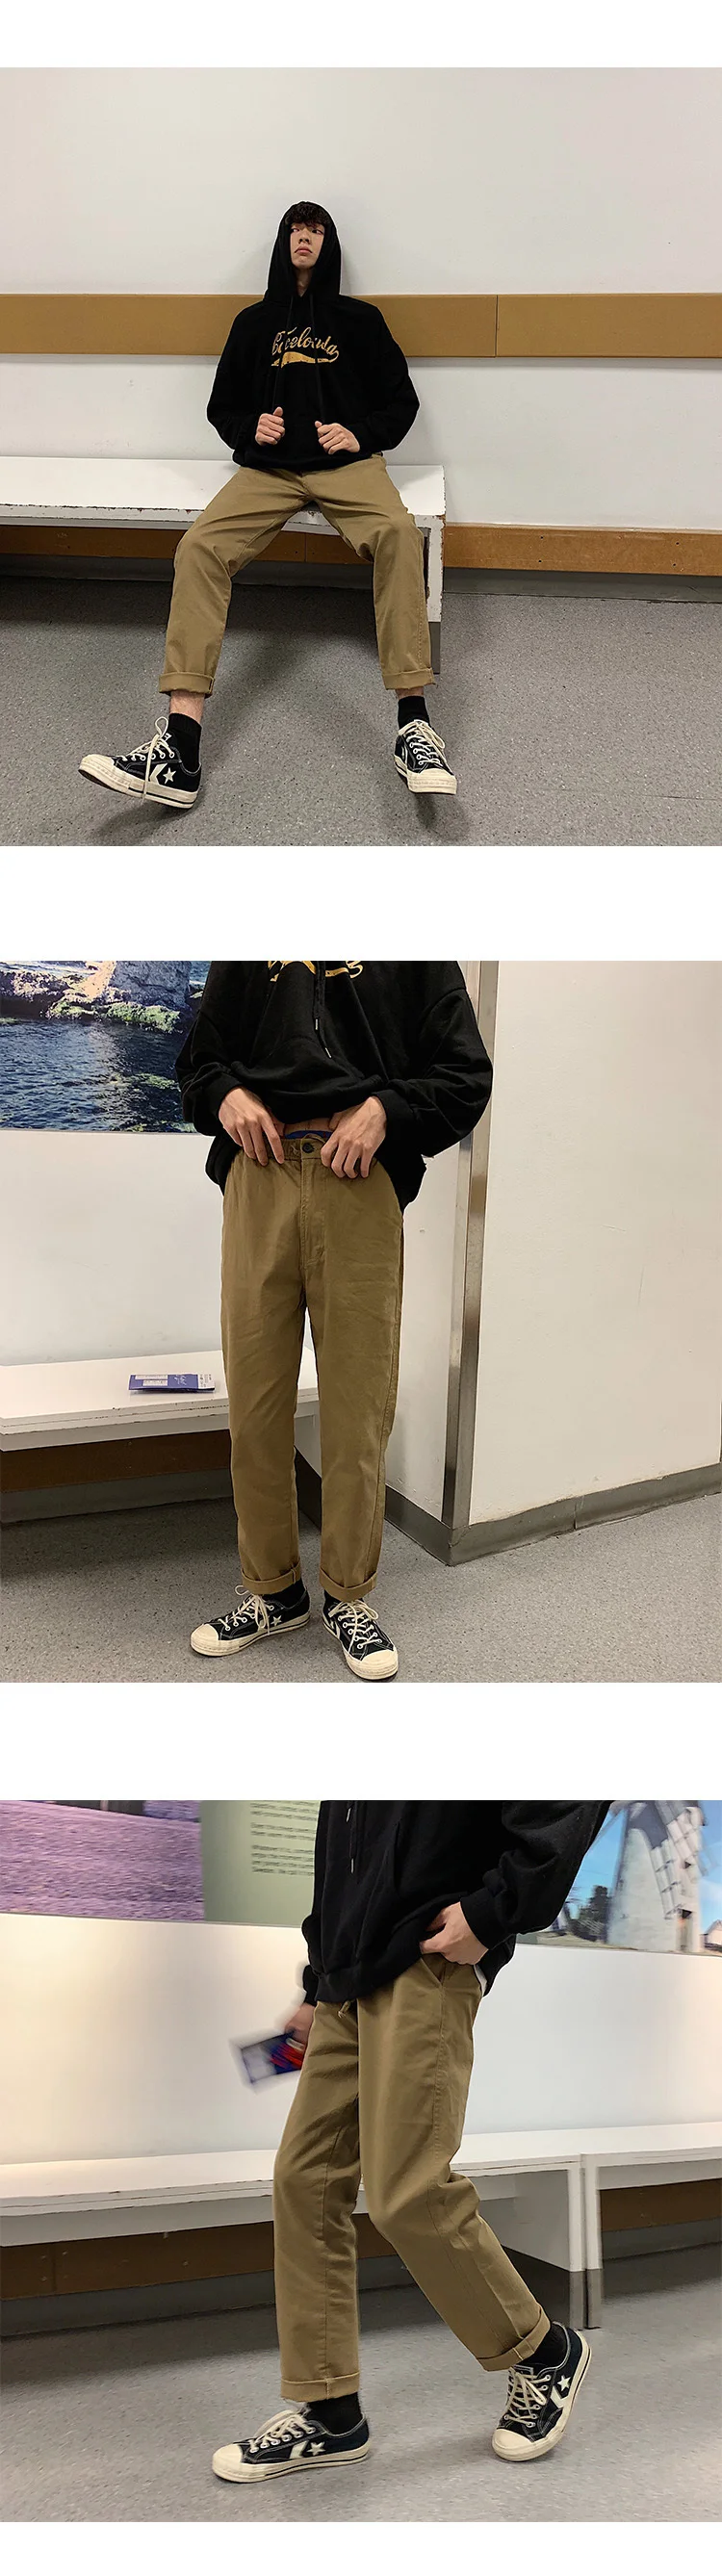 2019 японский стиль мужские хлопковые шаровары Повседневные Брюки карго прямые брюки хаки/серый/черный цвет брюки свободные джоггеры